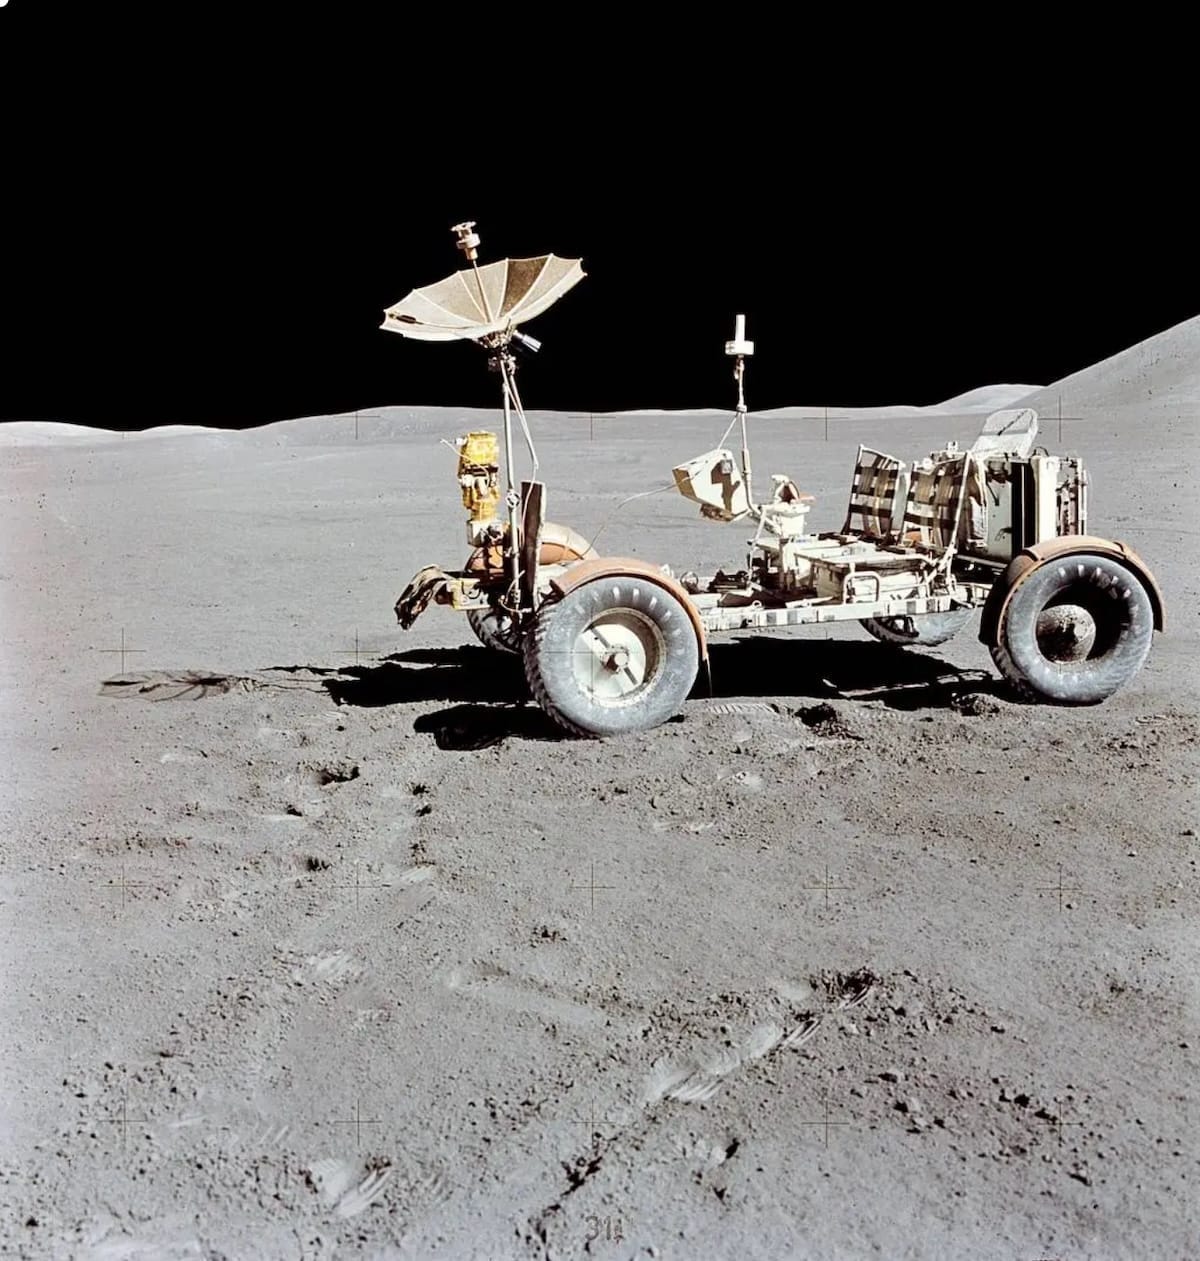 NASA's Lunar Roving Vehicle Apollo 15